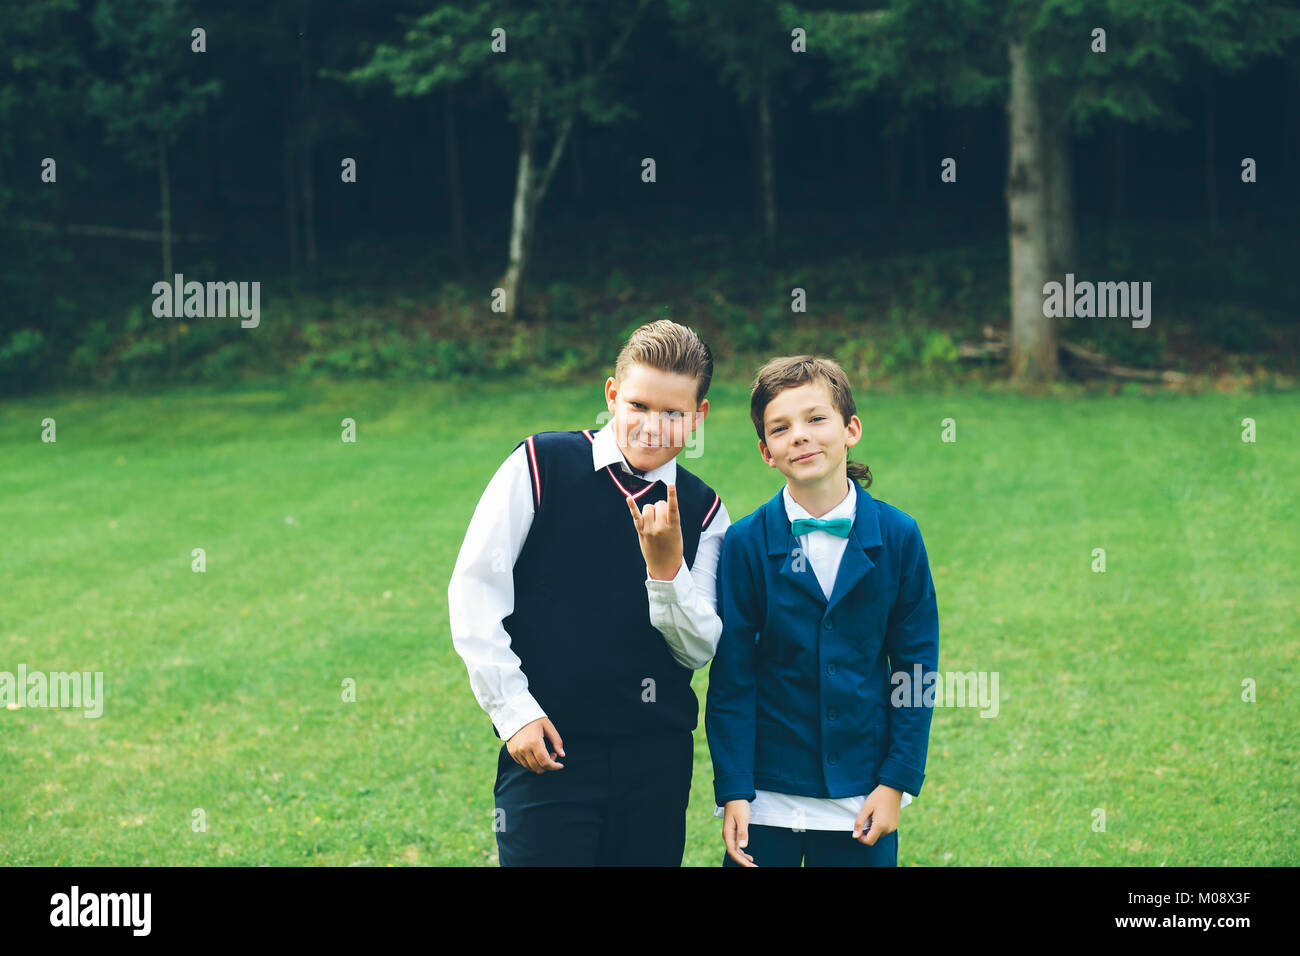 Zwei Jungen, Brüder, Freunde gekleidet in formale Abnutzung machen Spaß vor einem Wald auf einer Wiese im Sommer. Stockfoto